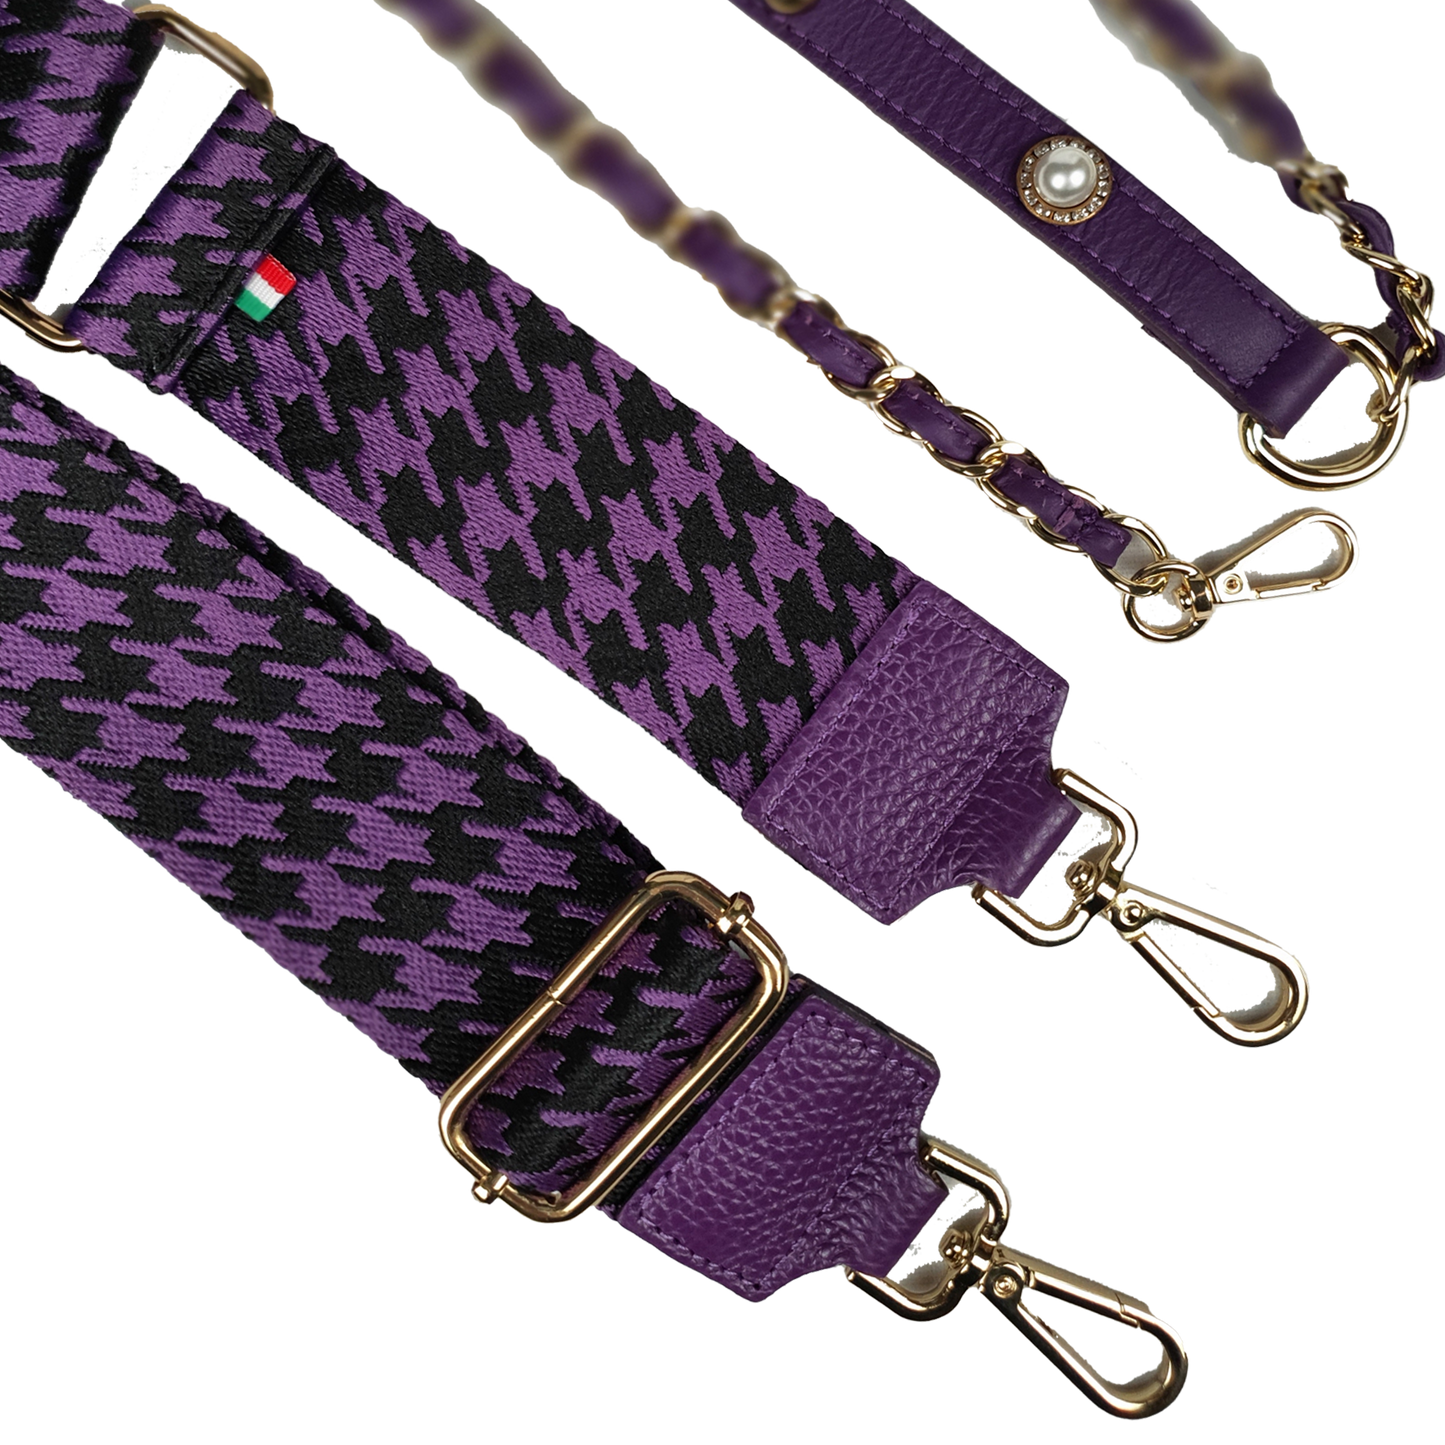 Lux Petite Edinburgh Bucket Bag in Digital Purple